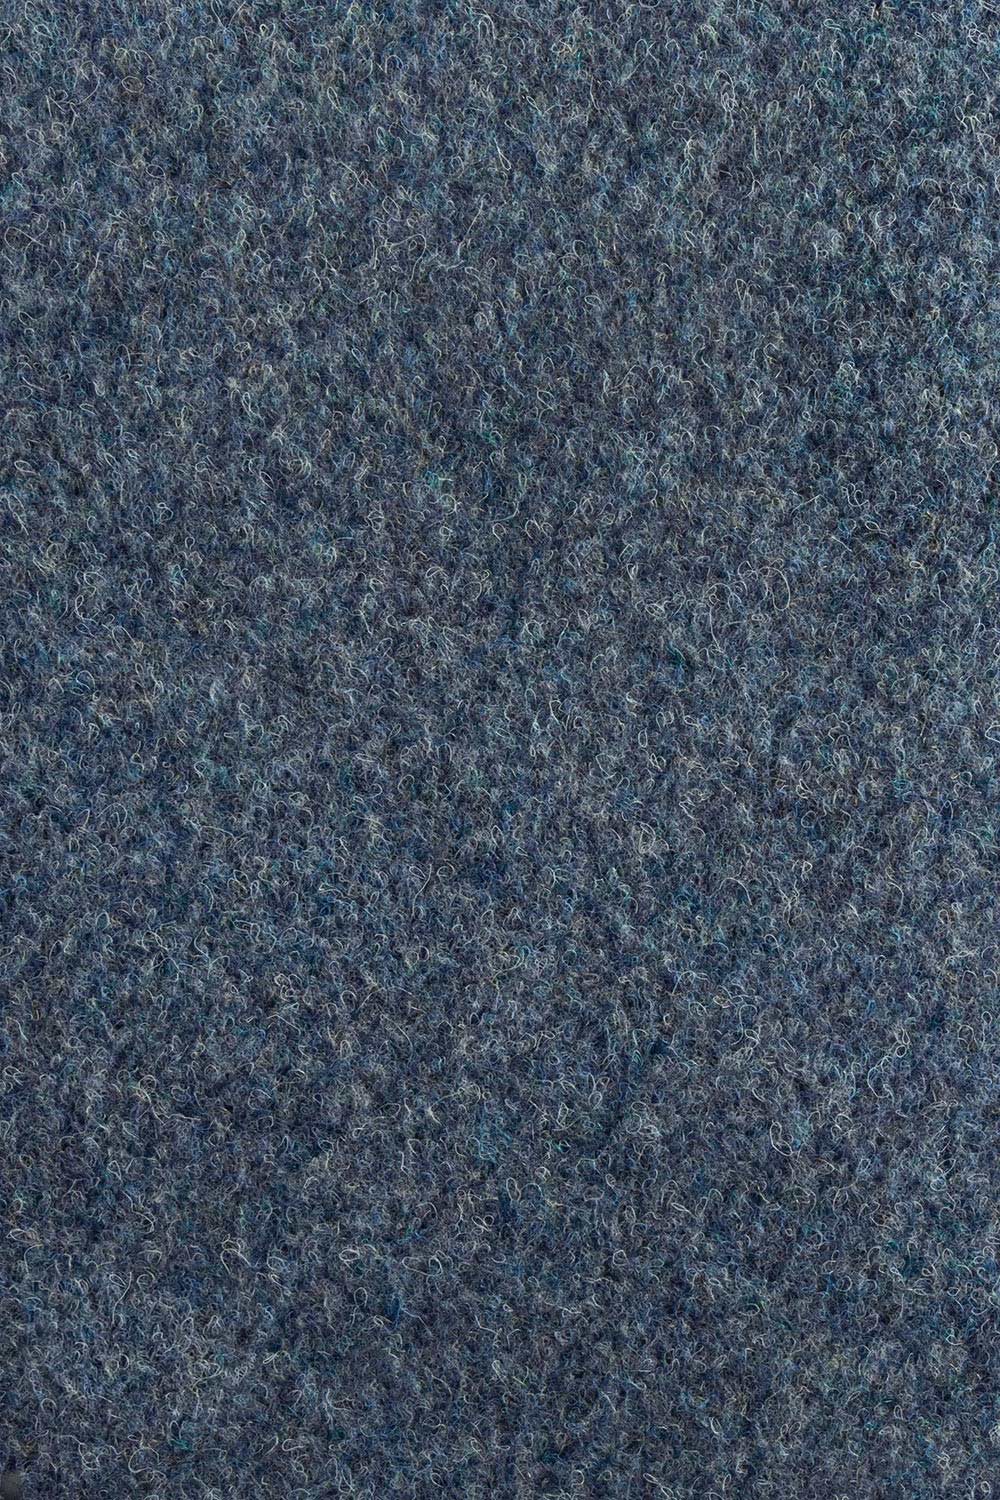 Objektový koberec New Orleans 539 G - Zvyšok 346x400 cm